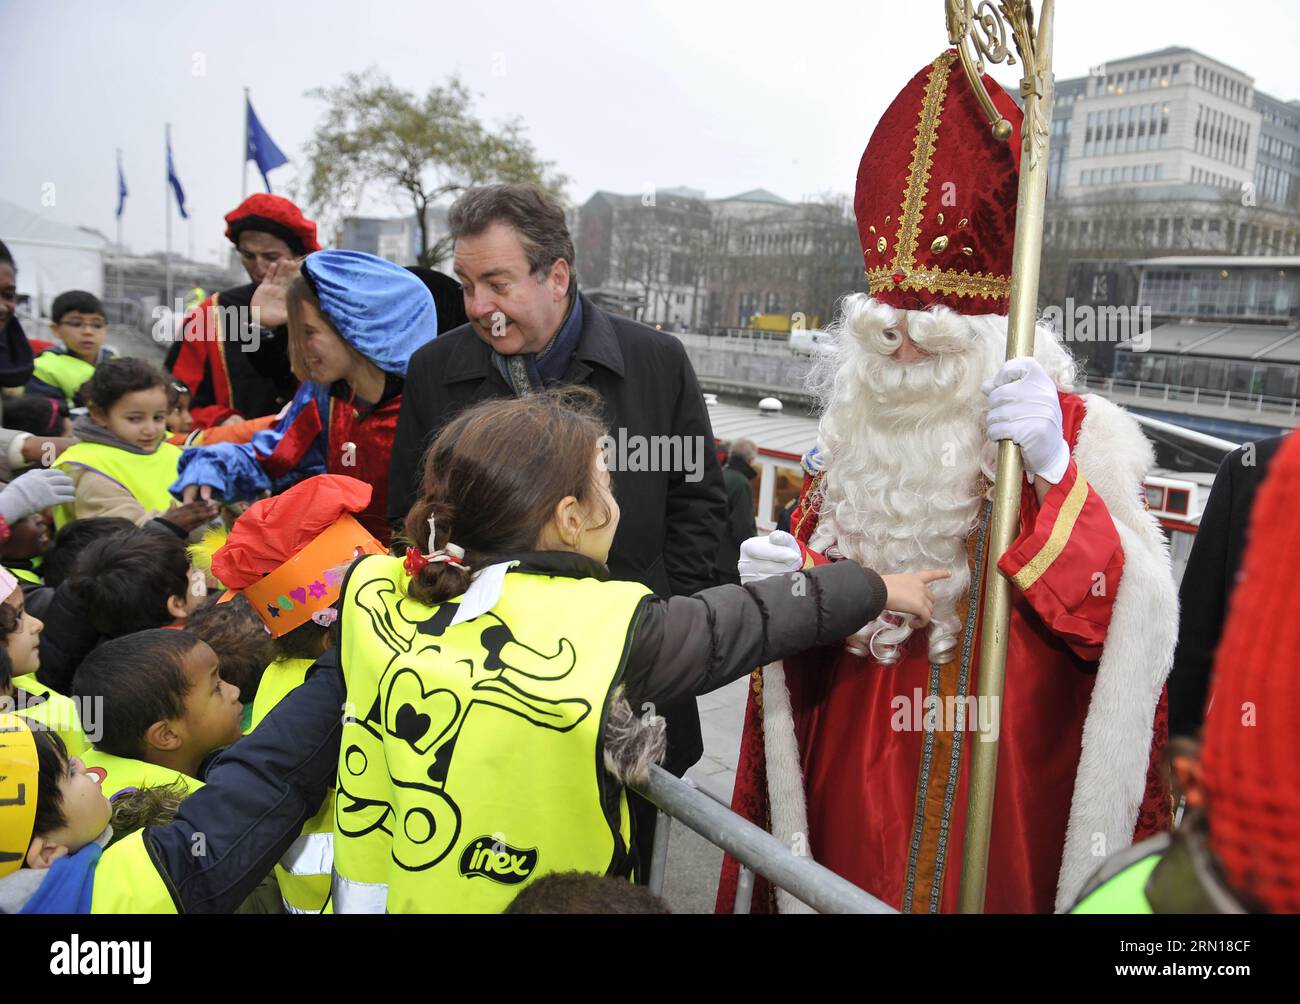 (141205) -- BRÜSSEL, 5. Dezember 2014 -- Kinder begrüßen die Ankunft von Saint-Nicolas (Sinterklaas) und seinen Helfern in Brüssel, 5. Dezember 2014. Saint-Nicolas, der eine der Quellen der beliebten Weihnachtsfigur des Weihnachtsmanns ist, wird jährlich mit Geschenken in der Nacht vor oder am Heiligen Nikolaus-Tag am 6. Dezember in Belgien gefeiert. ) BELGIEN-BRÜSSEL-SAINT NICOLAS YexPingfan PUBLICATIONxNOTxINxCHN Brüssel DEZ 5 2014 Kinder Willkommen die Ankünfte des Heiligen Nicolas und seiner Helfer IN Brüssel der Belgischen DEZ 5 2014 Saint Nicolas, der eine der Quellen der IST Stockfoto